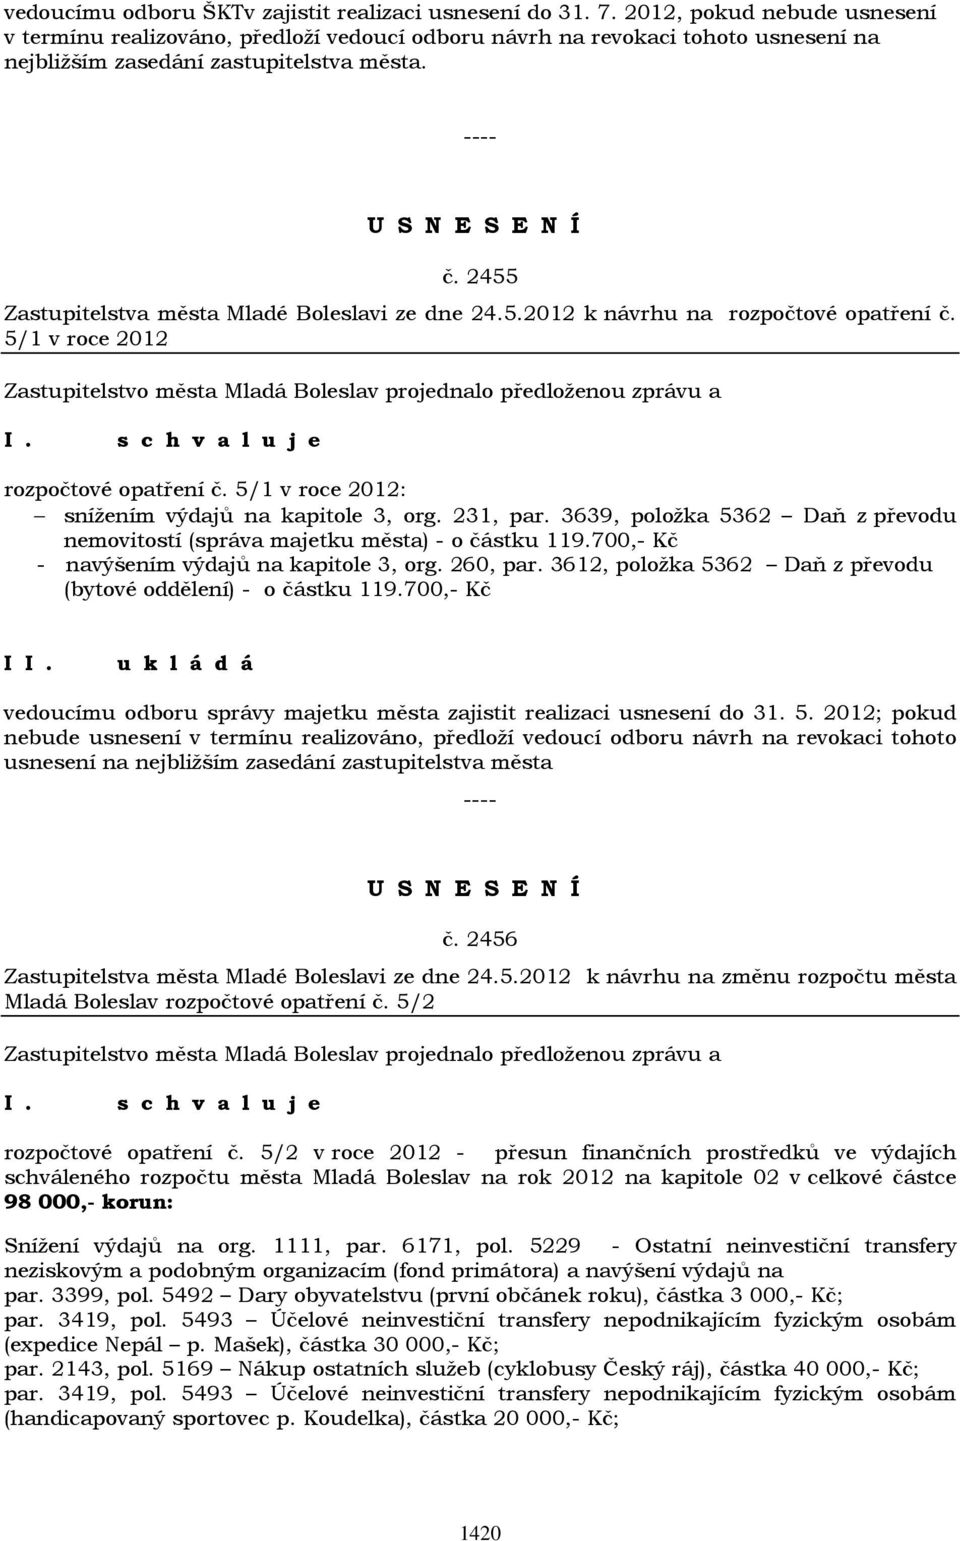 2455 Zastupitelstva města Mladé Boleslavi ze dne 24.5.2012 k návrhu na rozpočtové opatření č. 5/1 v roce 2012 rozpočtové opatření č. 5/1 v roce 2012: snížením výdajů na kapitole 3, org. 231, par.